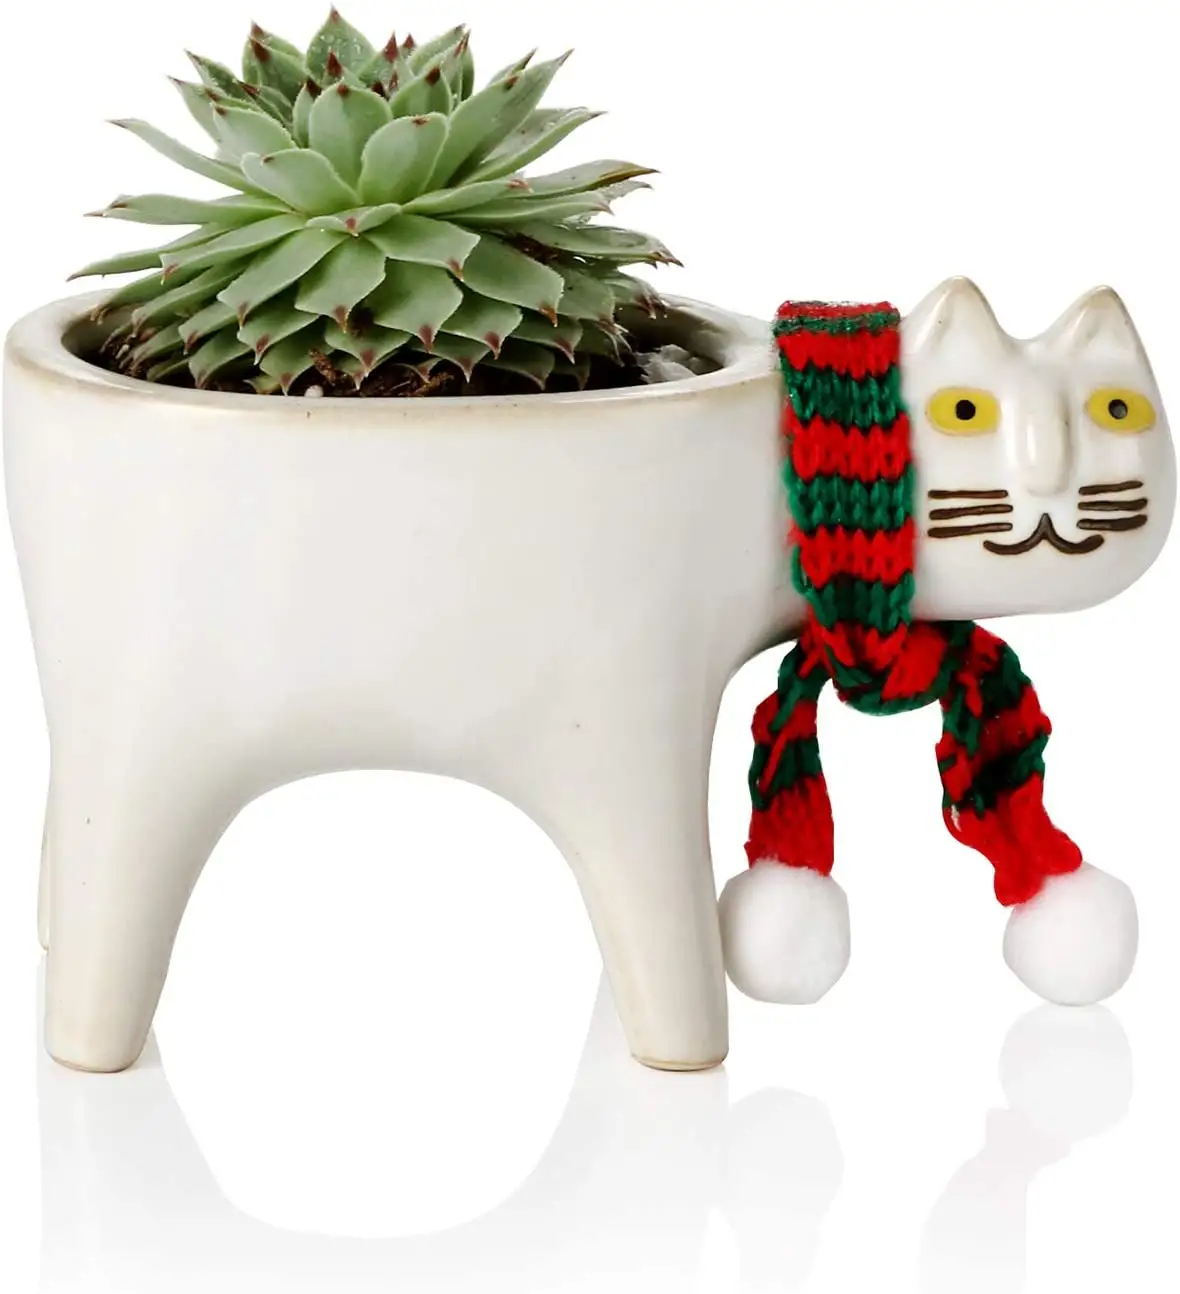 Macetero de cerámica con diseño de gatito, maceta de cerámica con diseño de Animal suculento para decoración del hogar, ideal para amantes de los gatos